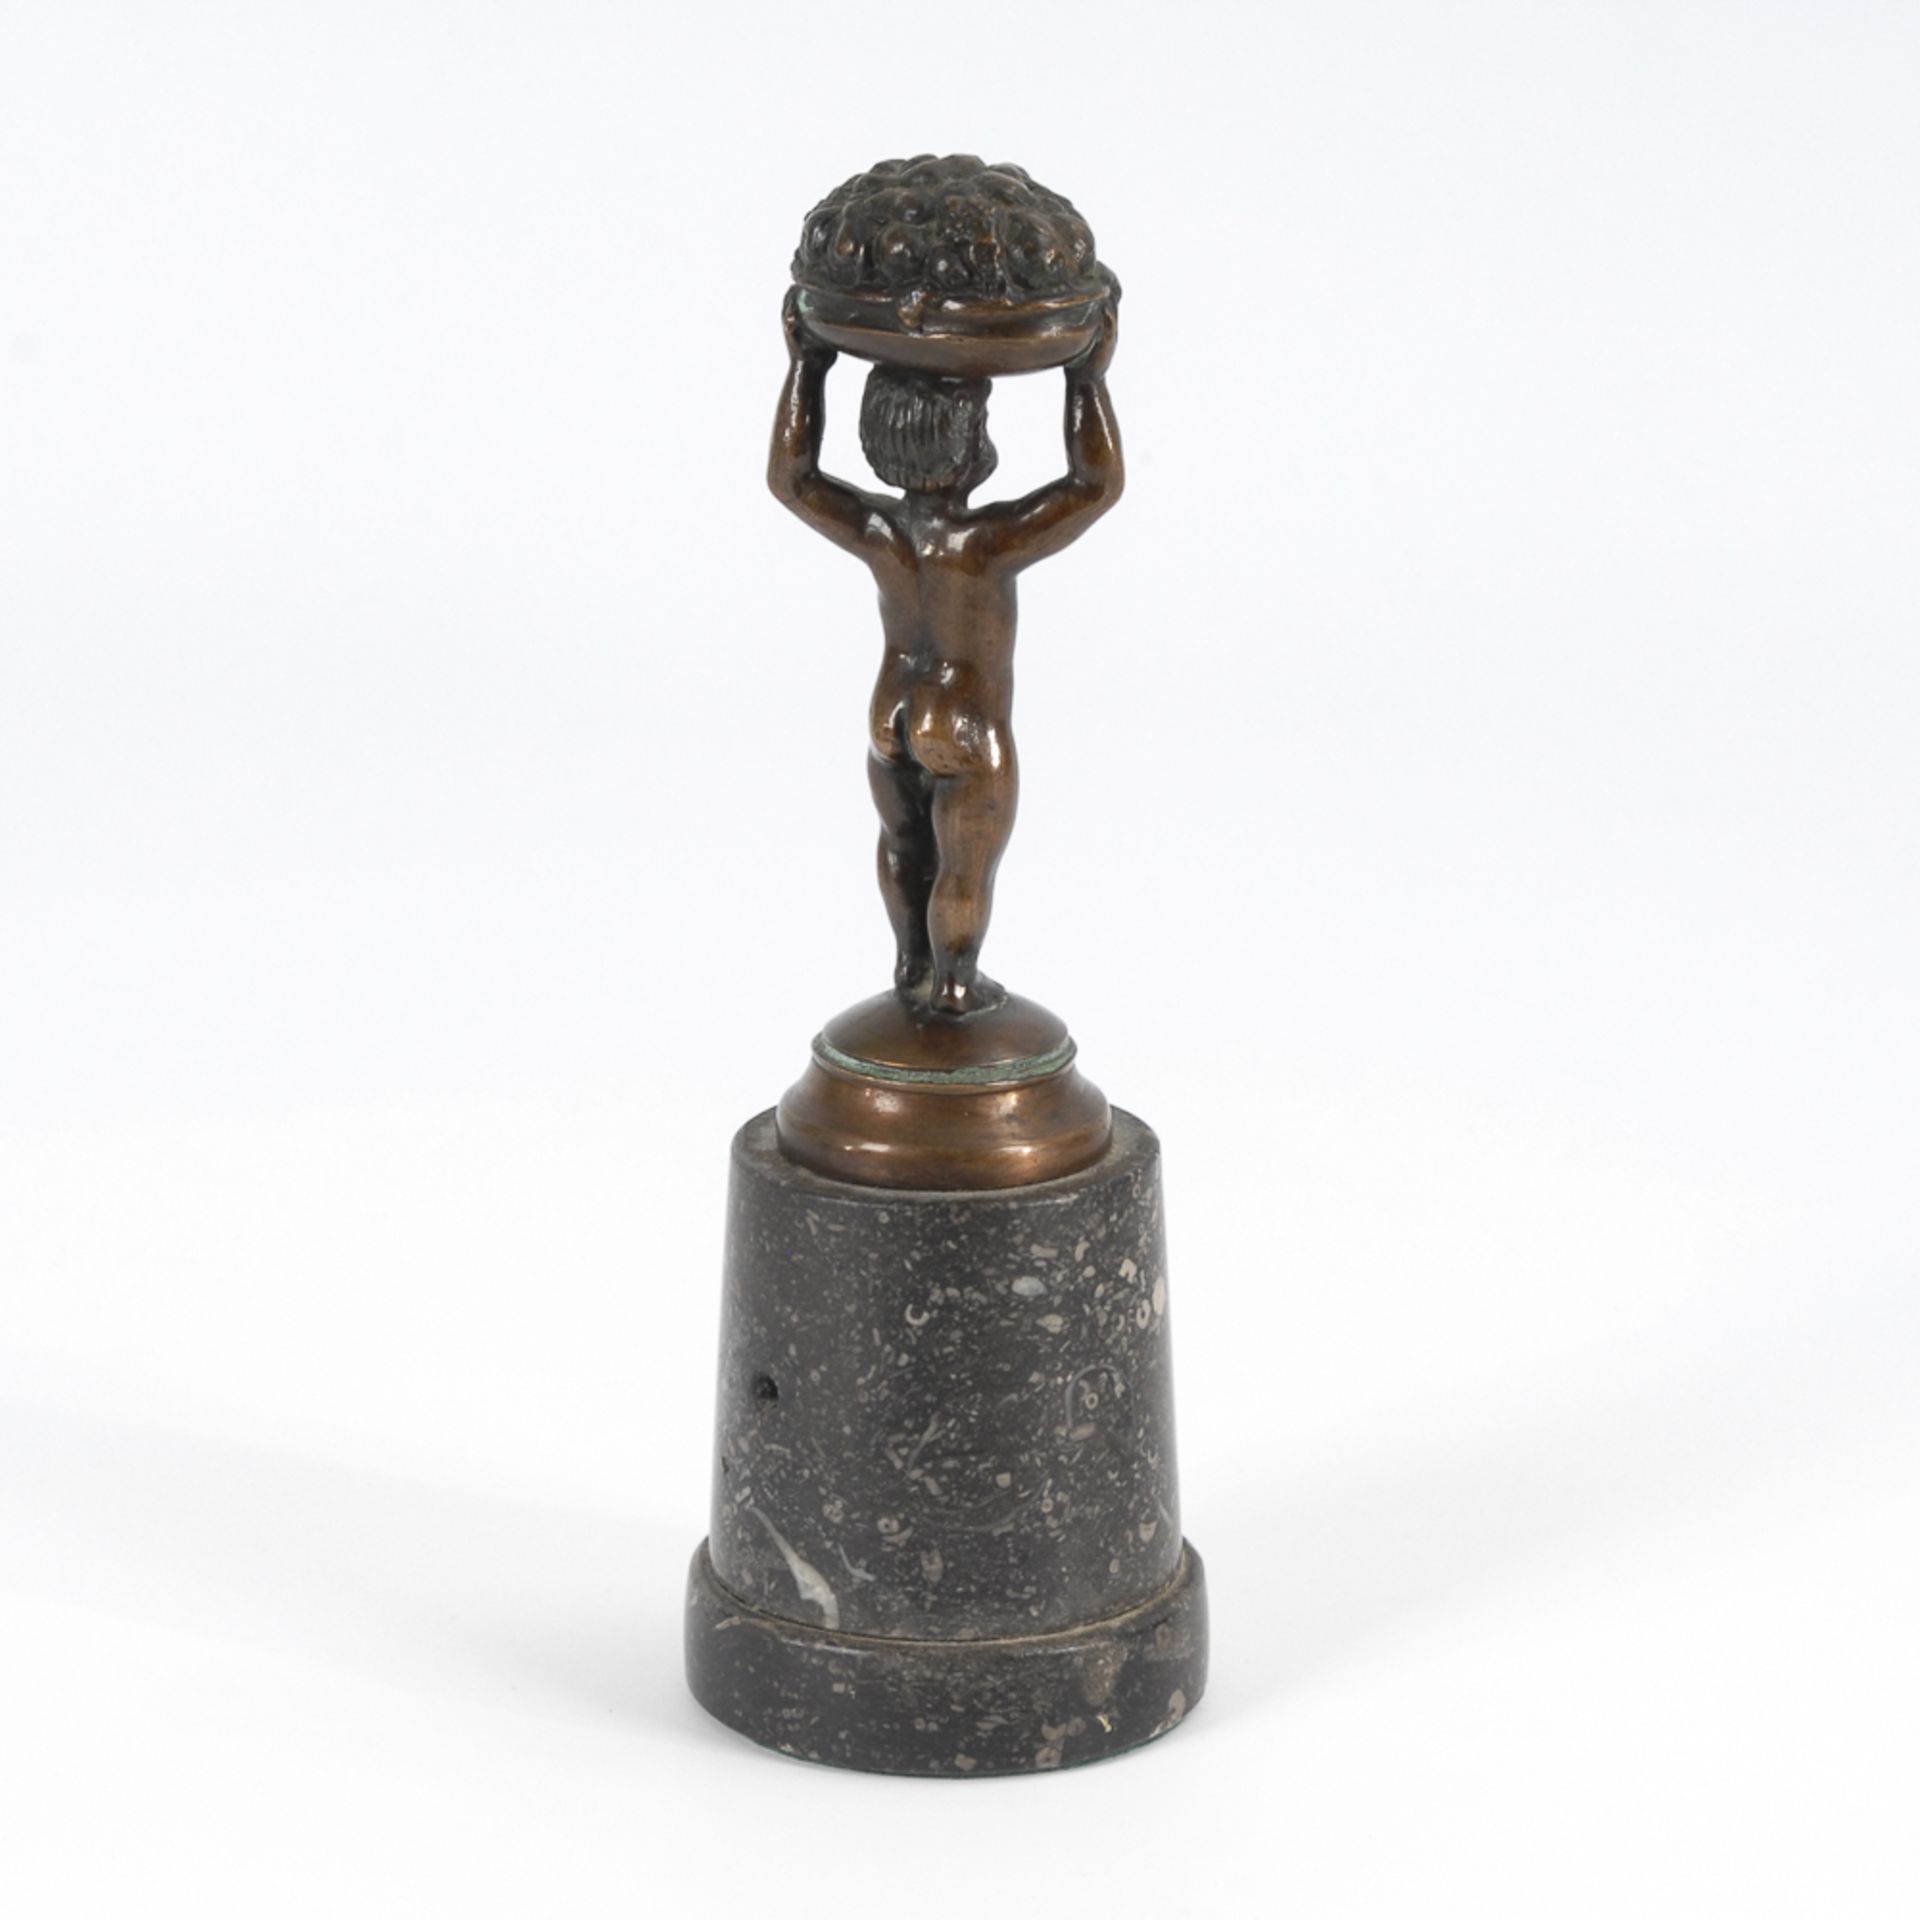 Jugendstil-Putto mit Fruchtkorb.Bronze patiniert, schwarzer Marmor-Sockel. H 13 / 20,5 cm. Mit - Bild 2 aus 2